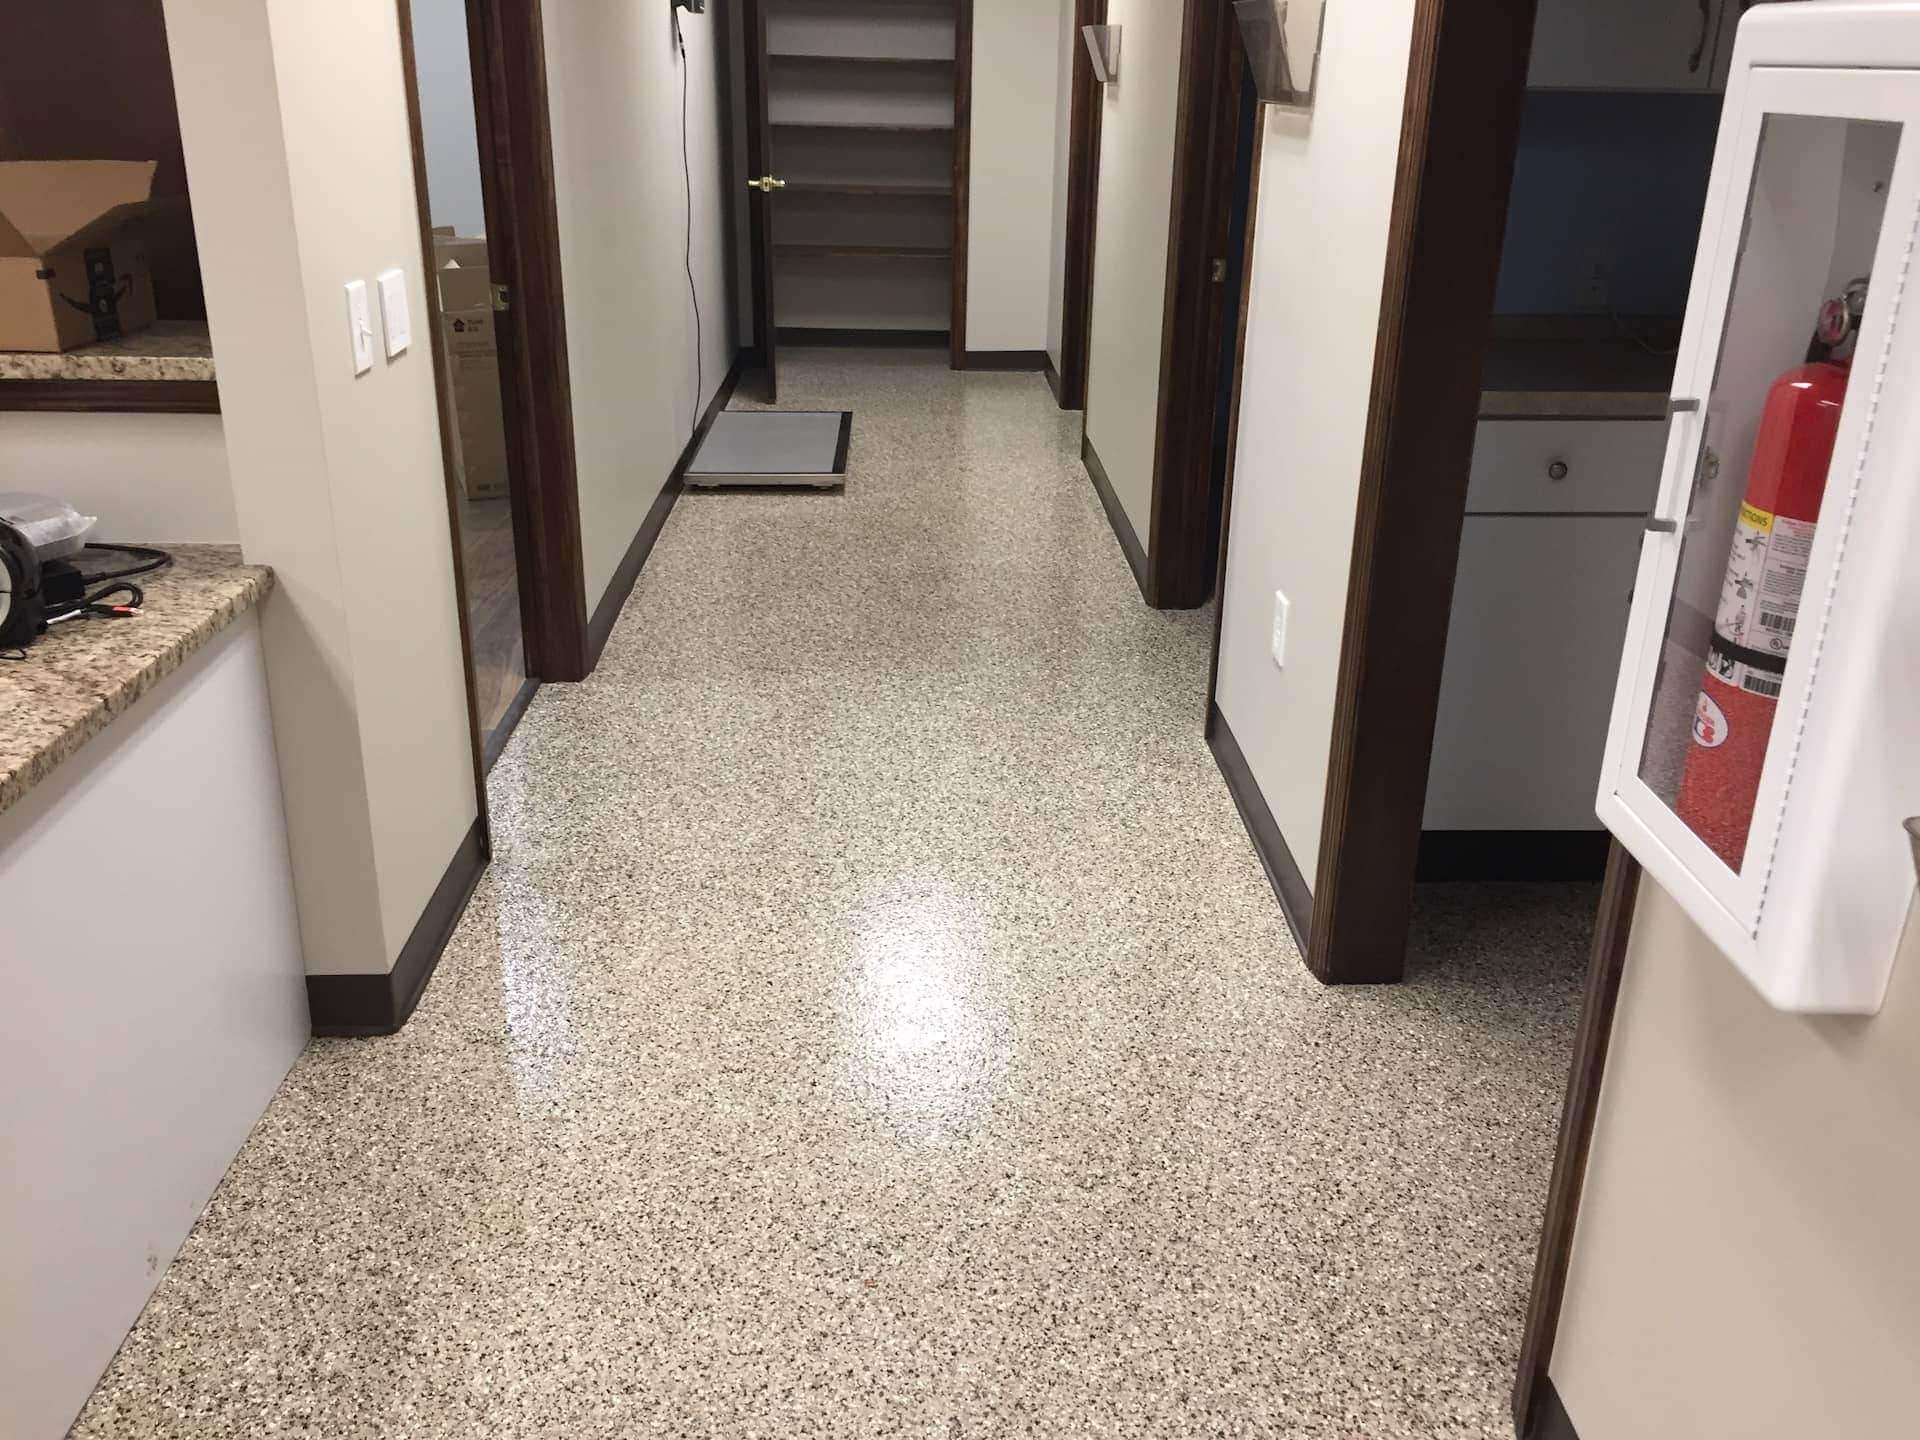 White Epoxy Basement Floor - Epoxy Flooring, Columbus Ohio